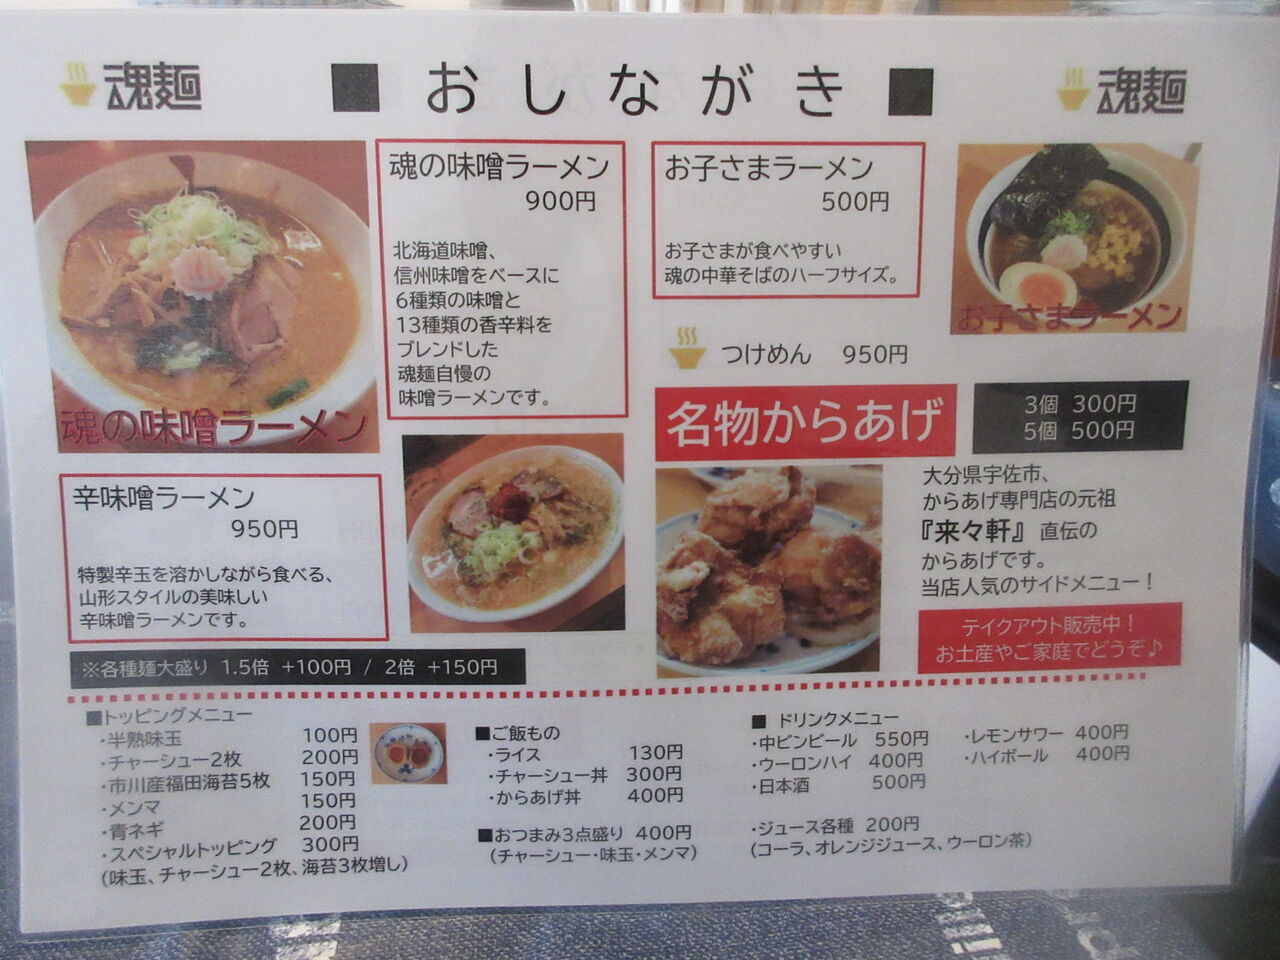 魂麺 横浜反町店 反町 魂の中華そば なっくの食べたり飲んだり歩いたり